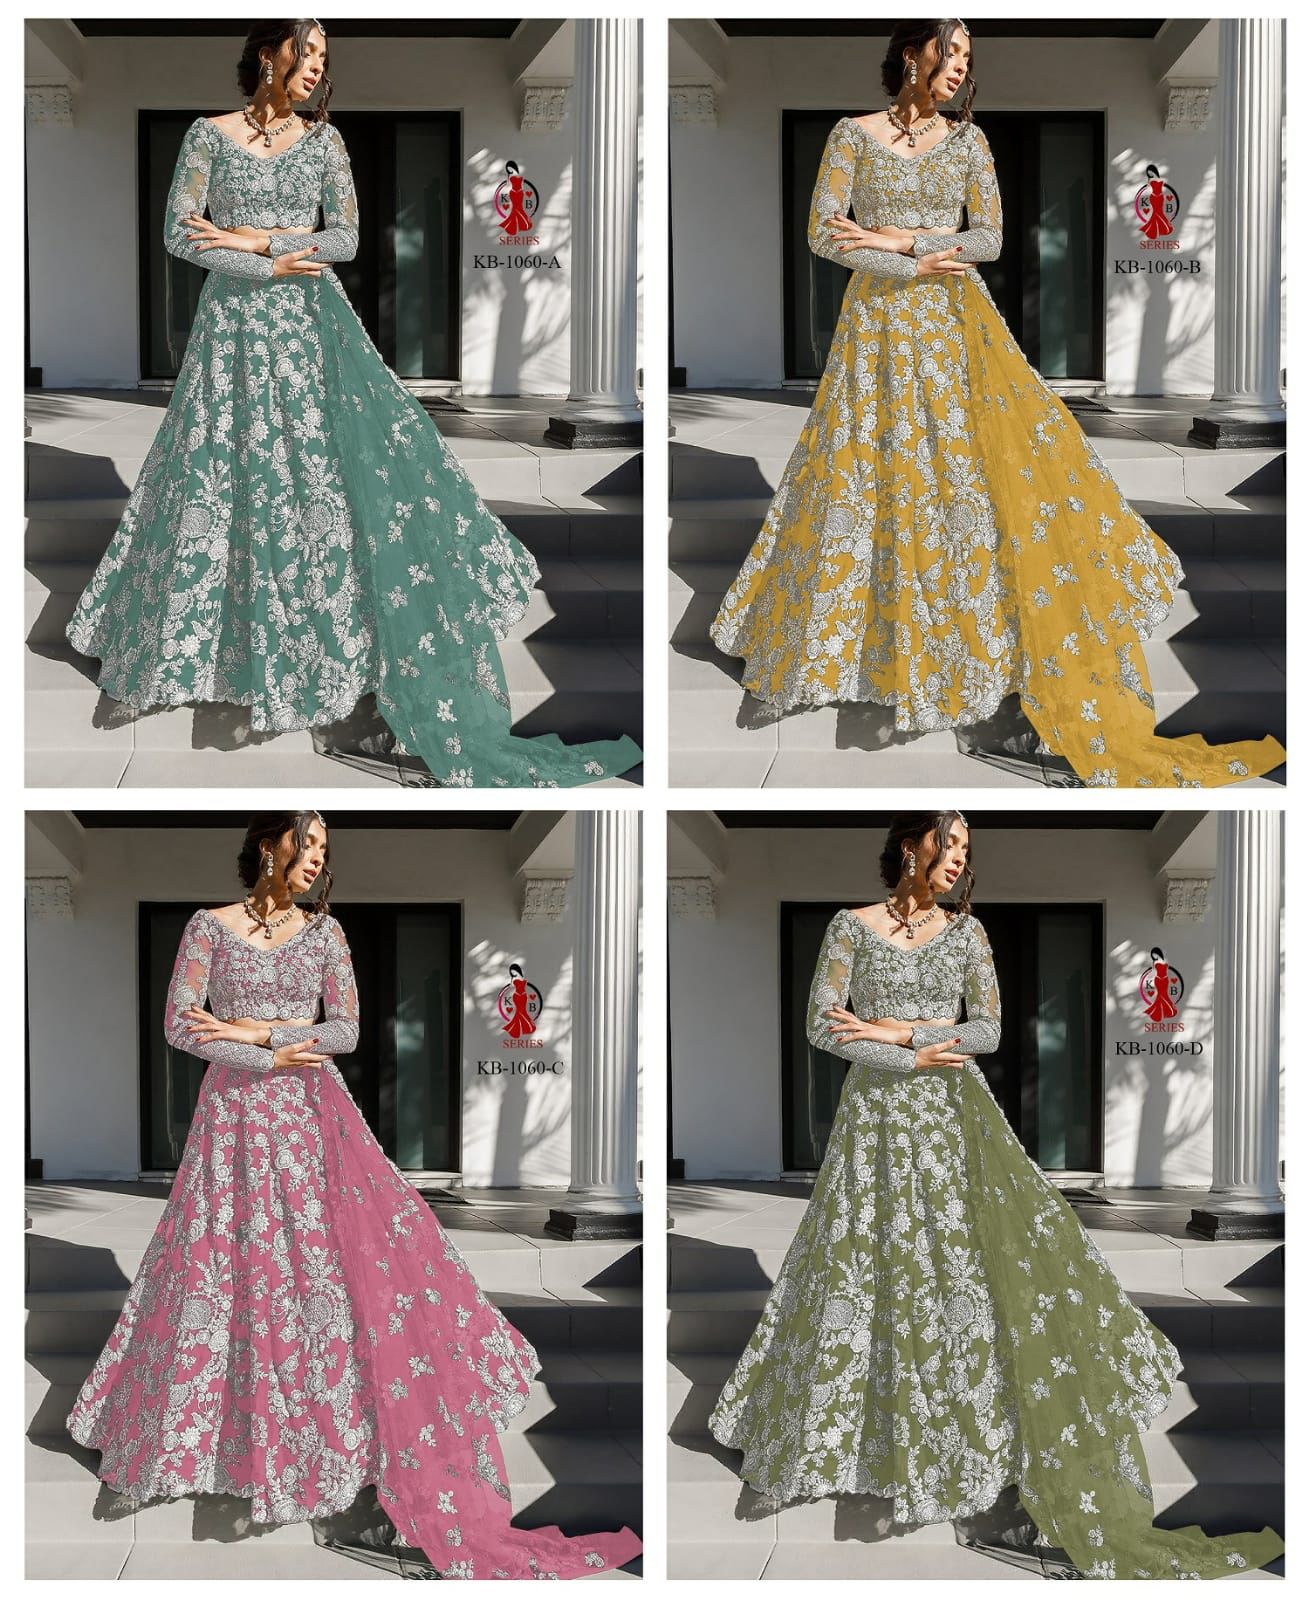 KB Series Boutique Collection Bridal Lehenga KB-1060 Colors 